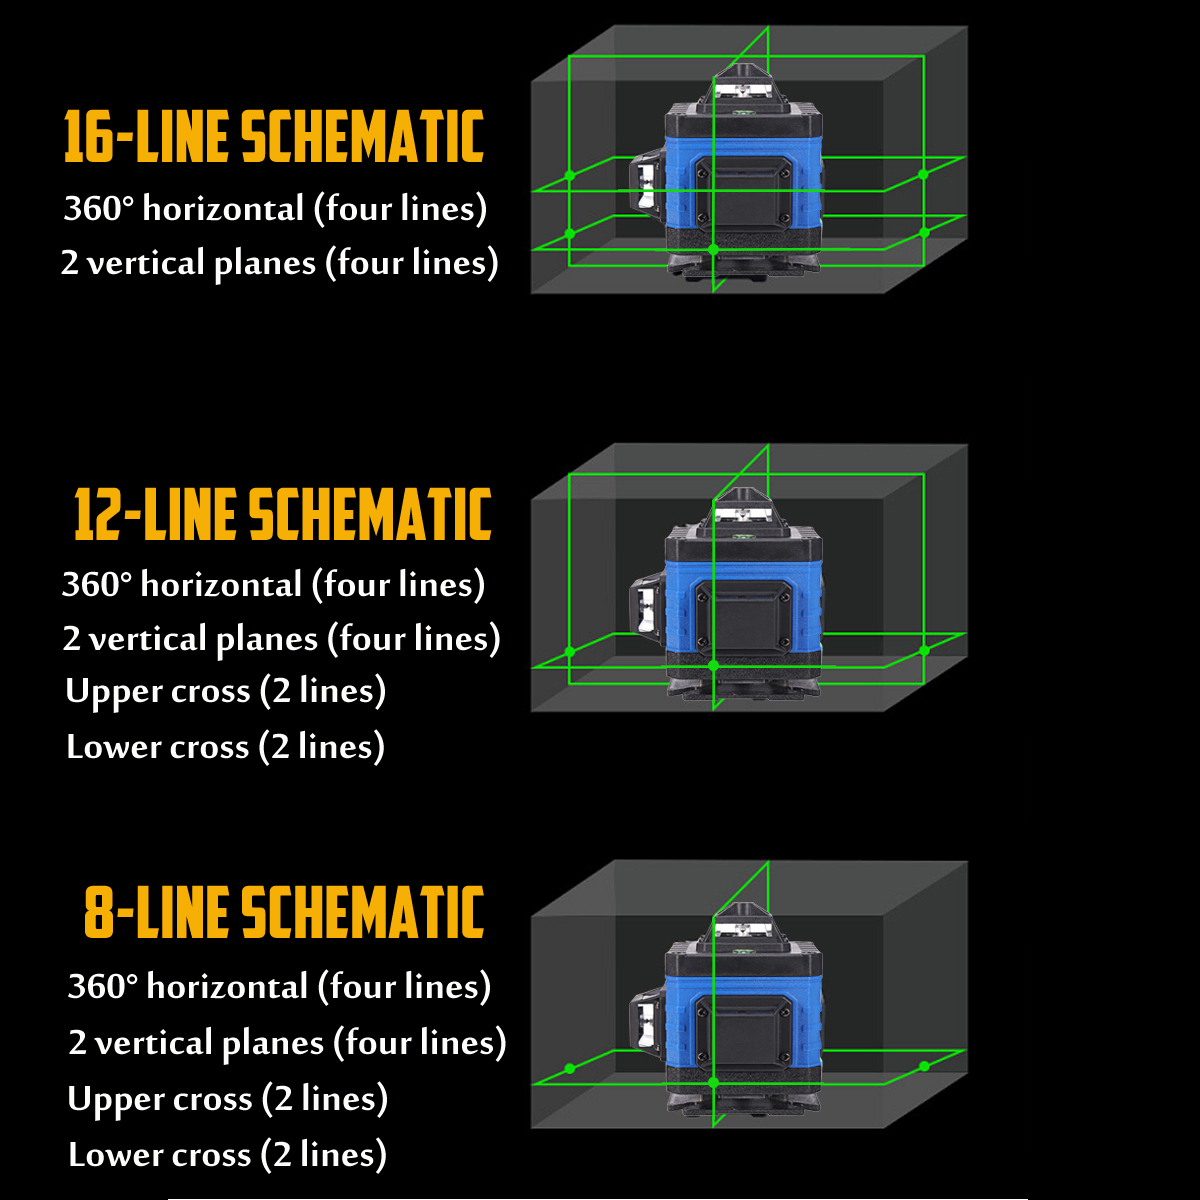 3D-16Line-Green-Light-Laser-Level-Digital-Self-Leveling-360deg-Rotary-Measuring-1741315-2